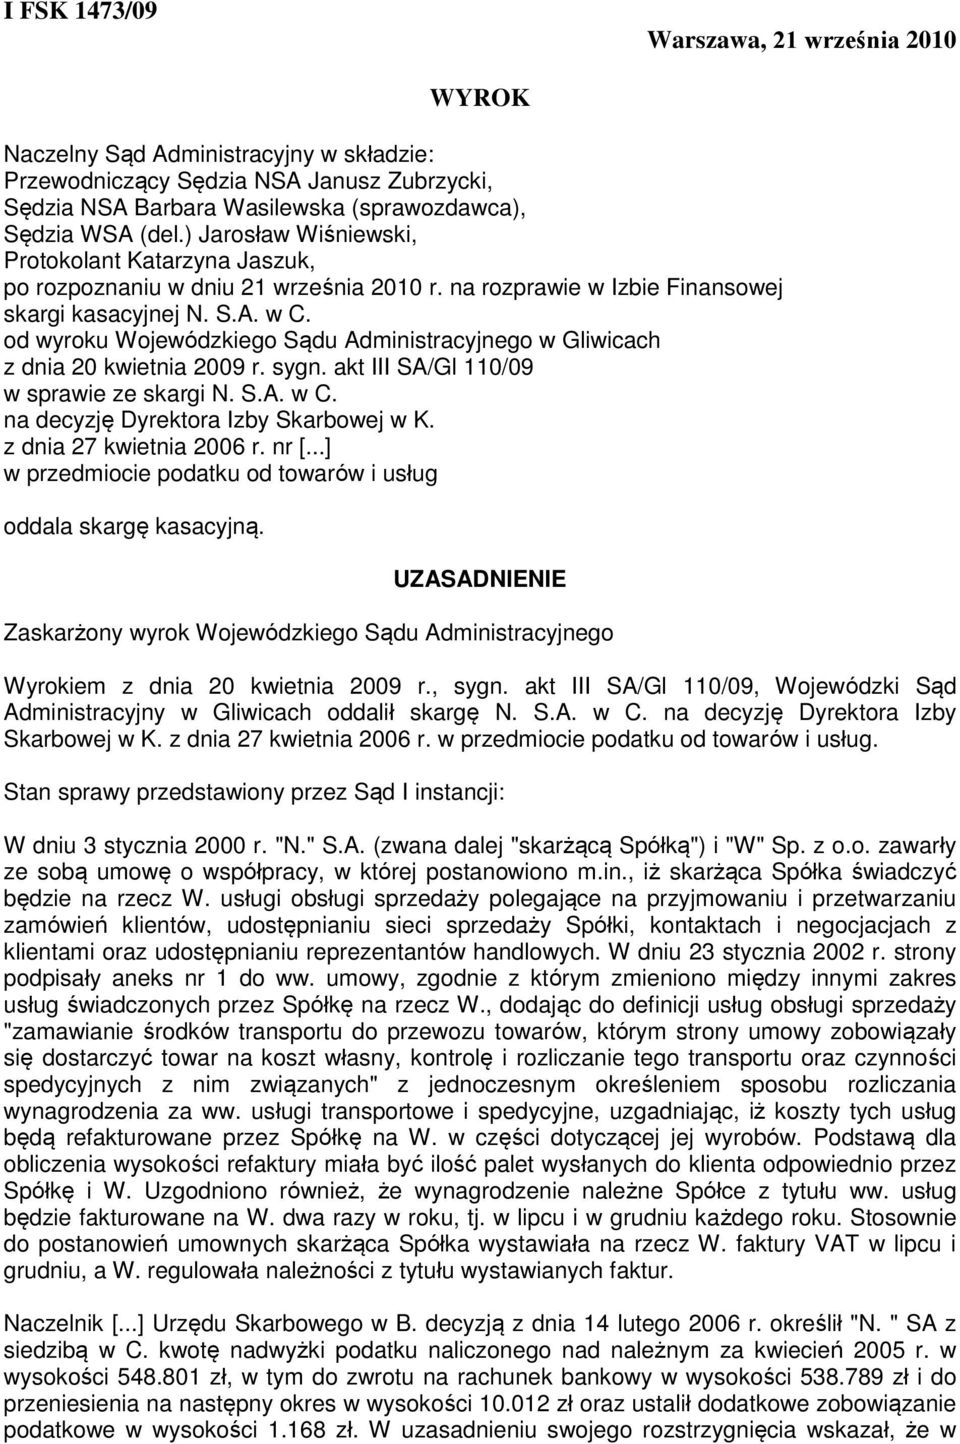 od wyroku Wojewódzkiego Sądu Administracyjnego w Gliwicach z dnia 20 kwietnia 2009 r. sygn. akt III SA/Gl 110/09 w sprawie ze skargi N. S.A. w C. na decyzję Dyrektora Izby Skarbowej w K.